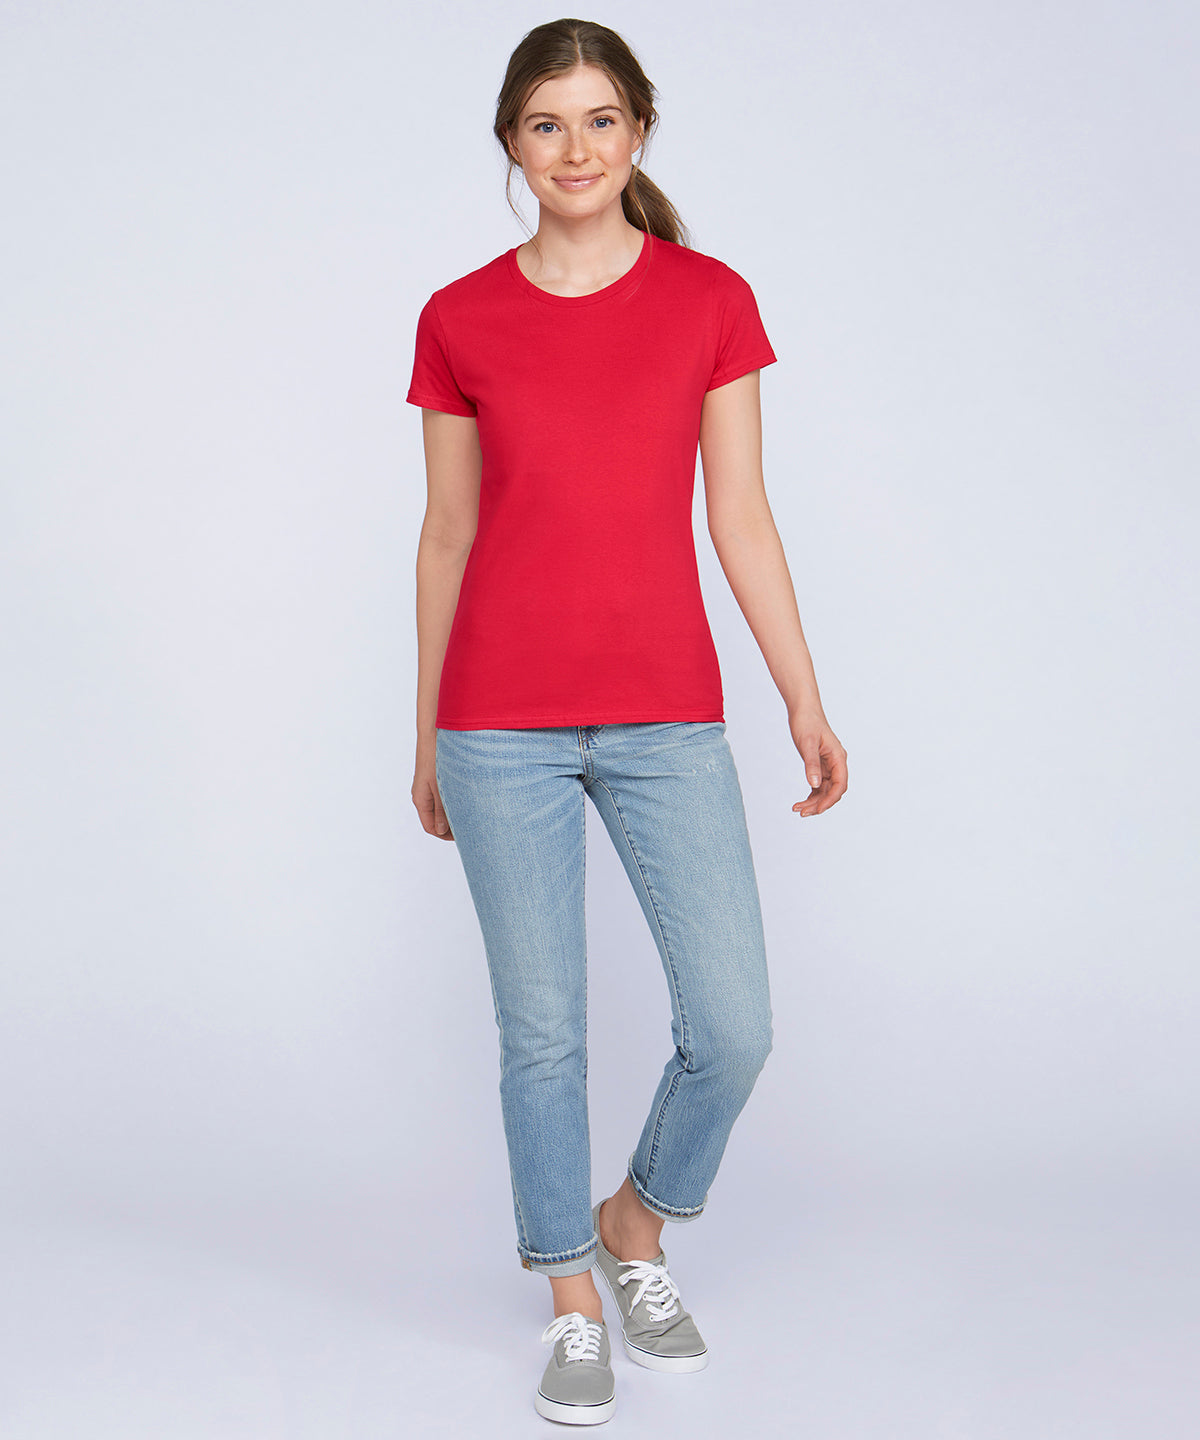 Stuttermabolir - Women's Premium Cotton® RS T-shirt